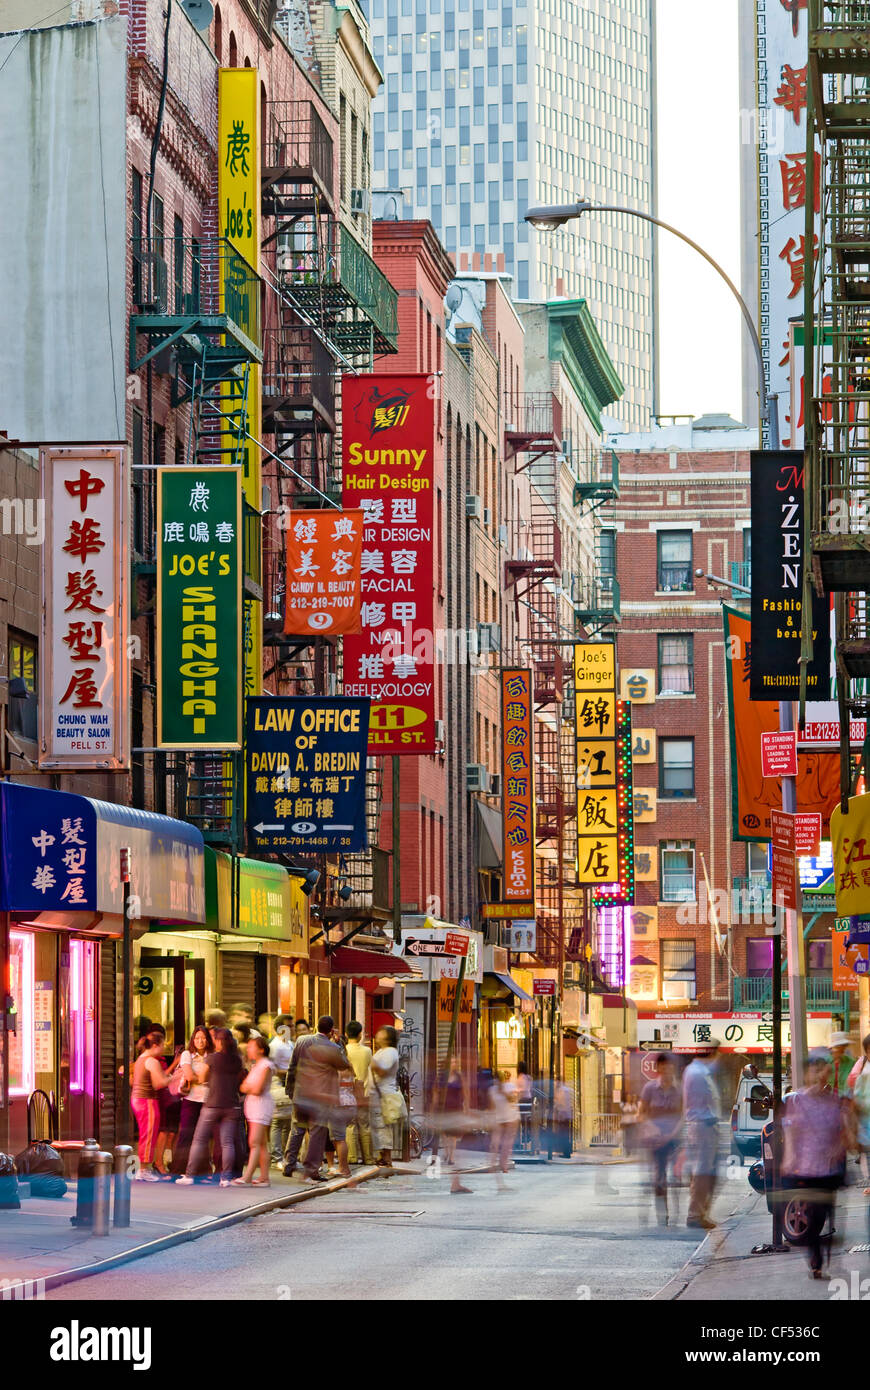 Pell Street a Chinatown, New York City, visualizza i segni colorati per ristoranti cinesi come Joe's Shanghai. Foto Stock